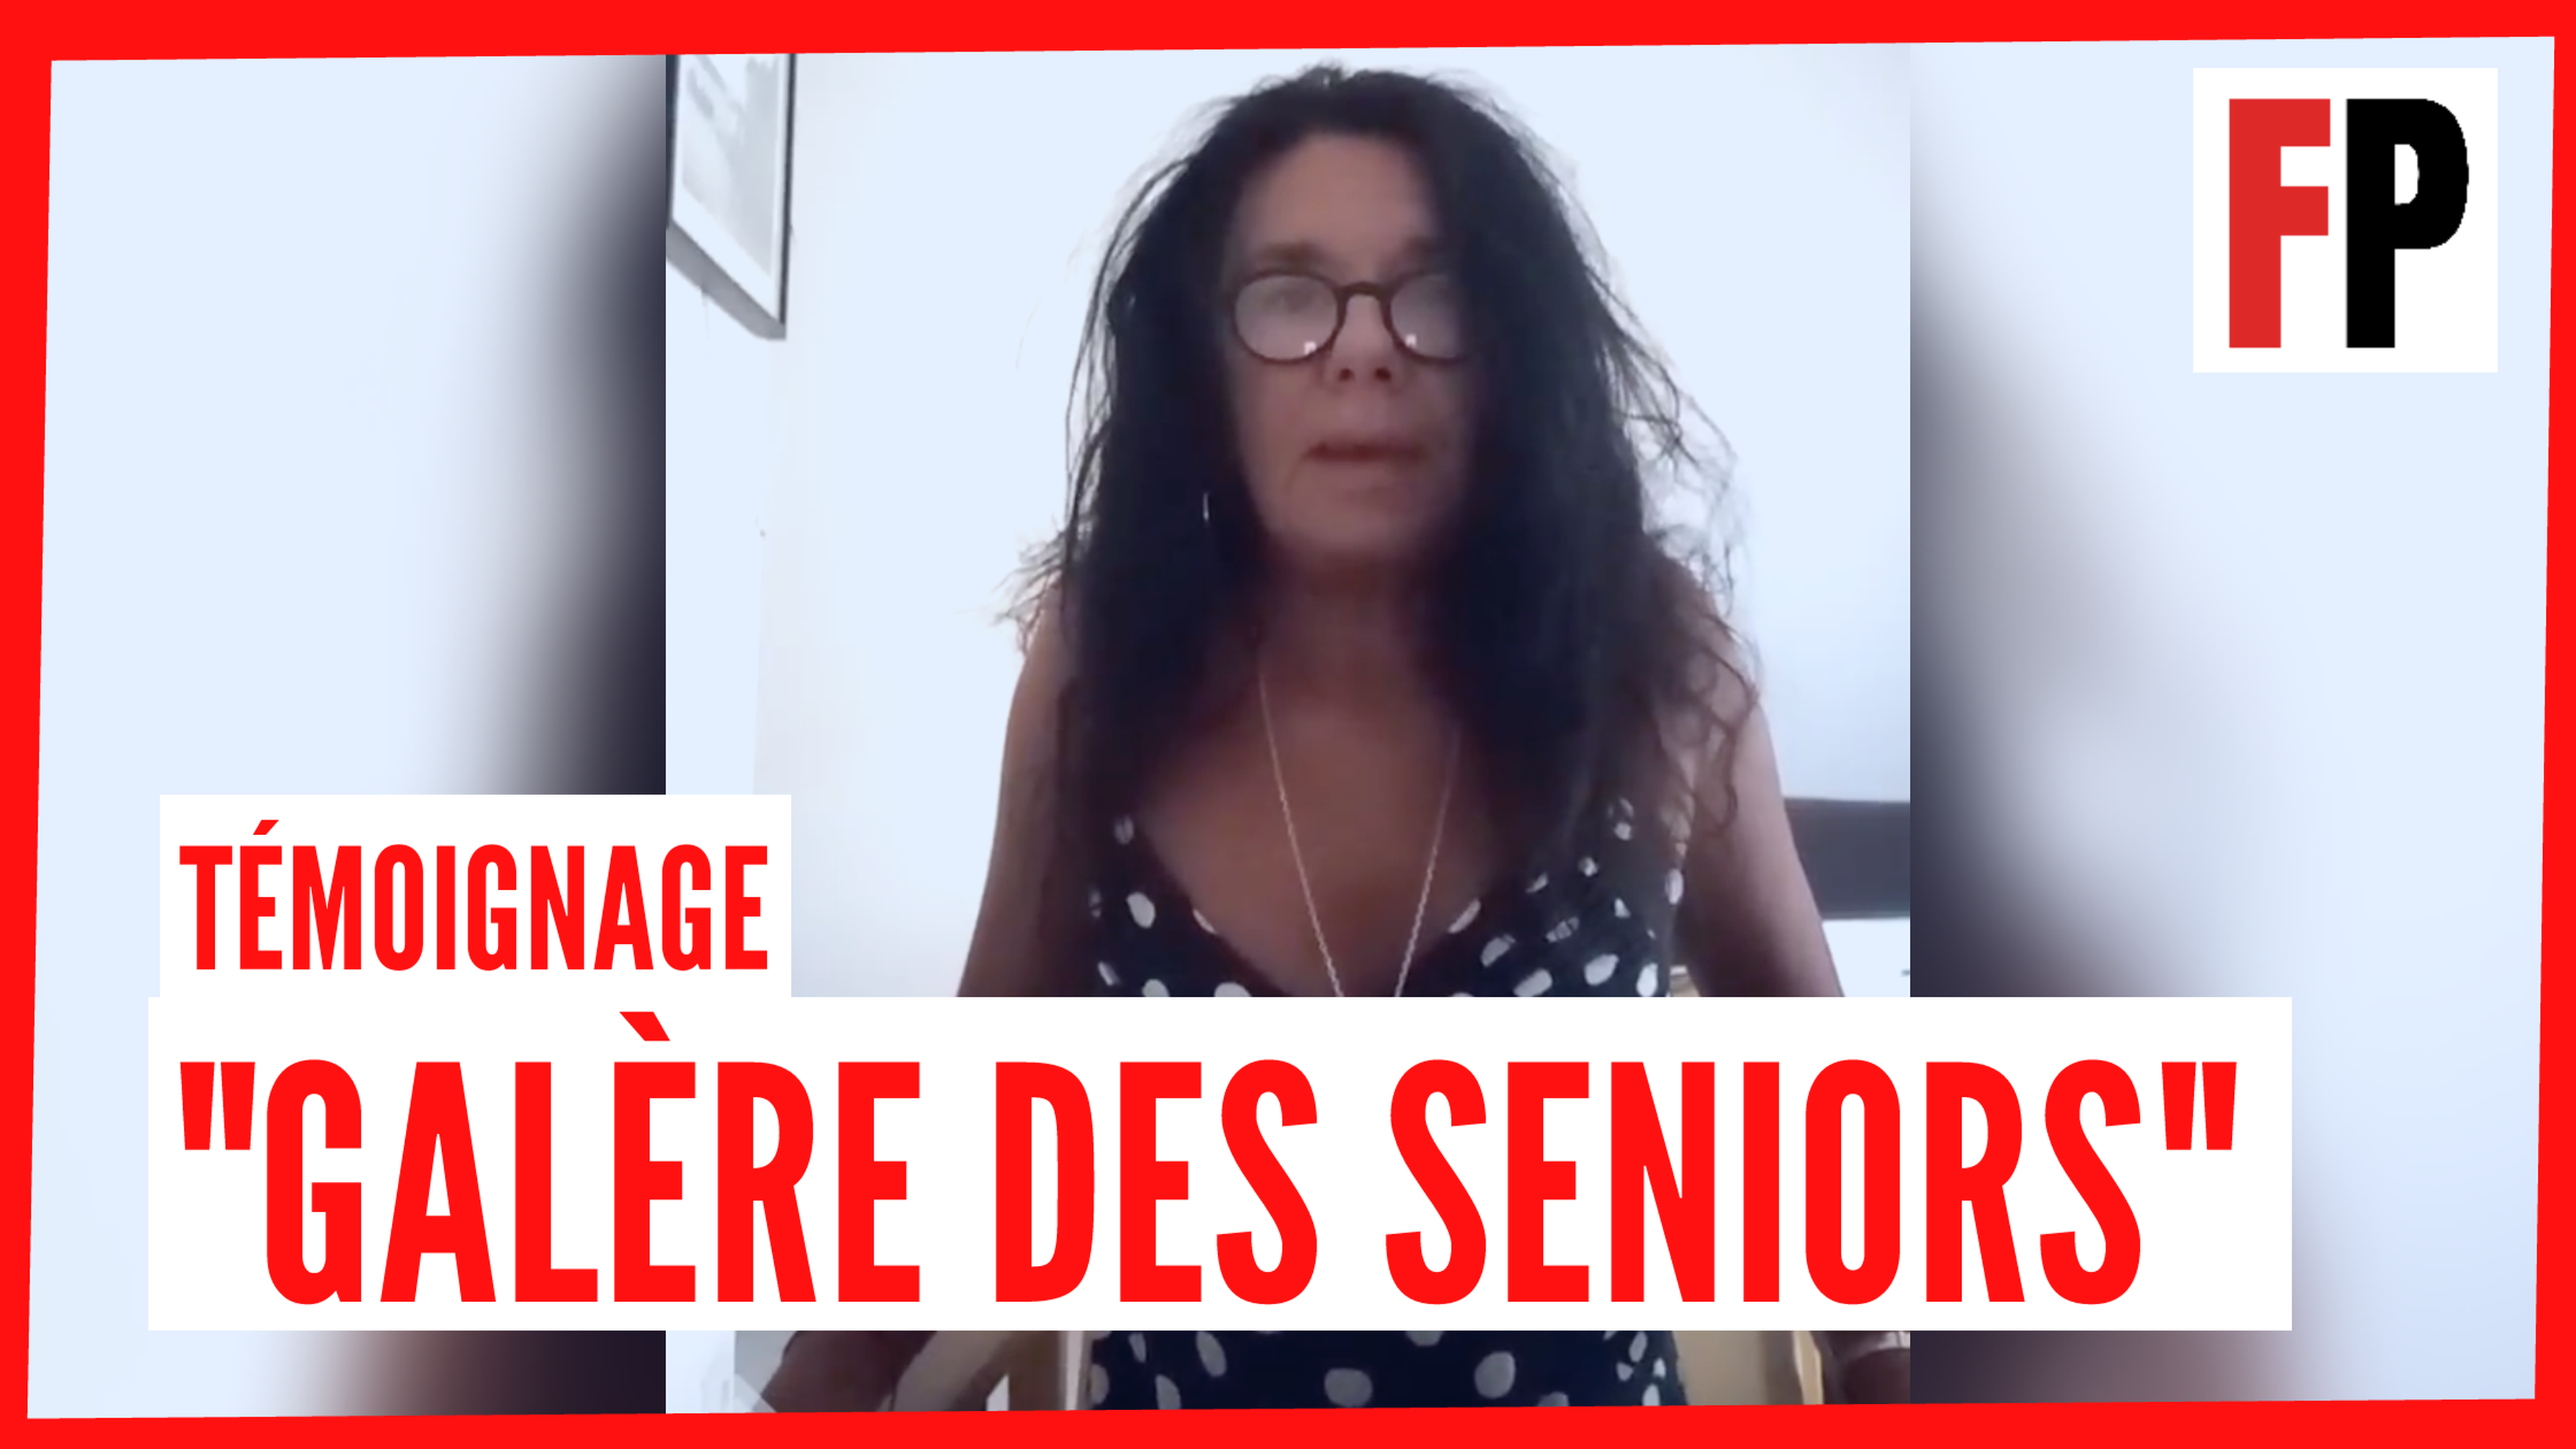 Galère des seniors : le témoignage vidéo de Véronique Castet